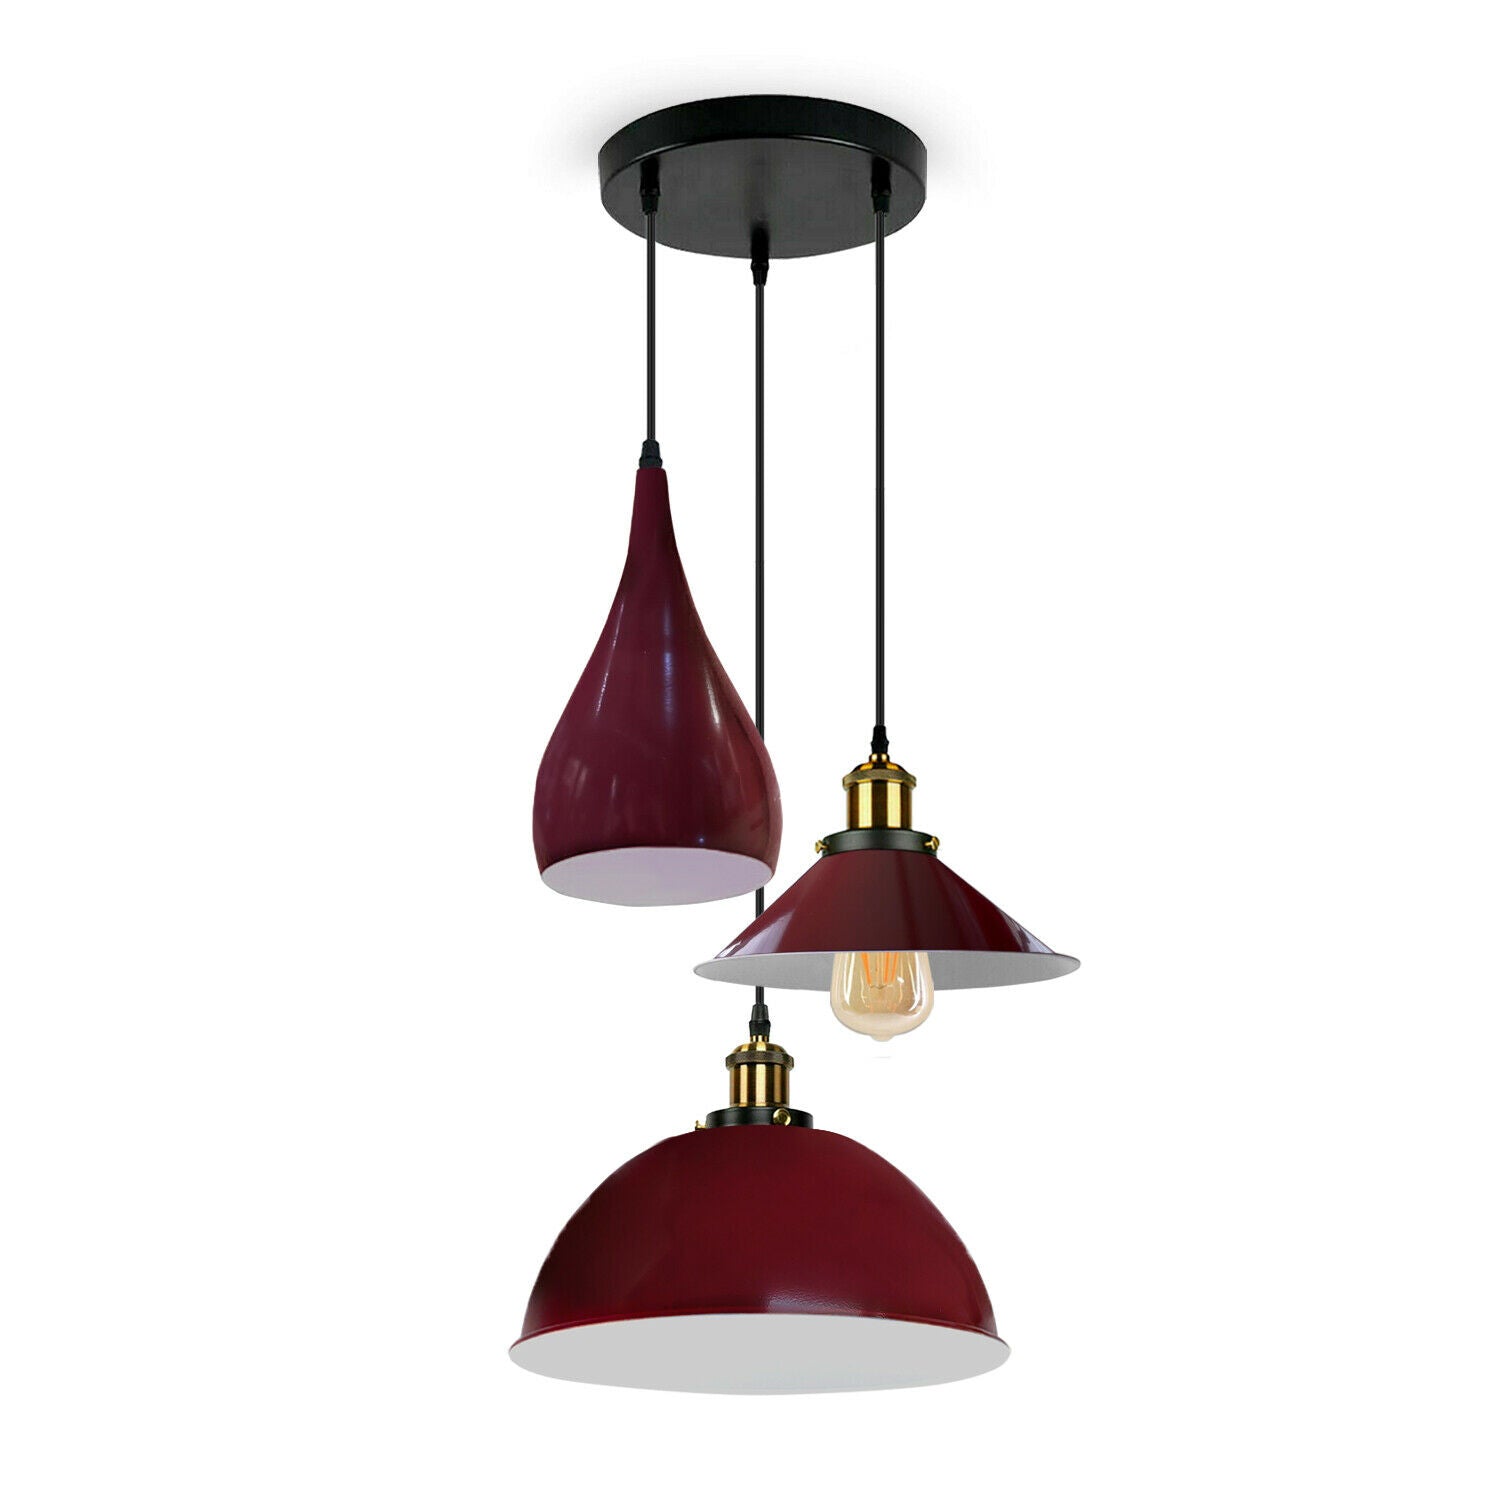 Burgundy Modern 3 Head Metal Hanging Light Shade Ceiling Pendant Light~3513 - LEDSone UK Ltd